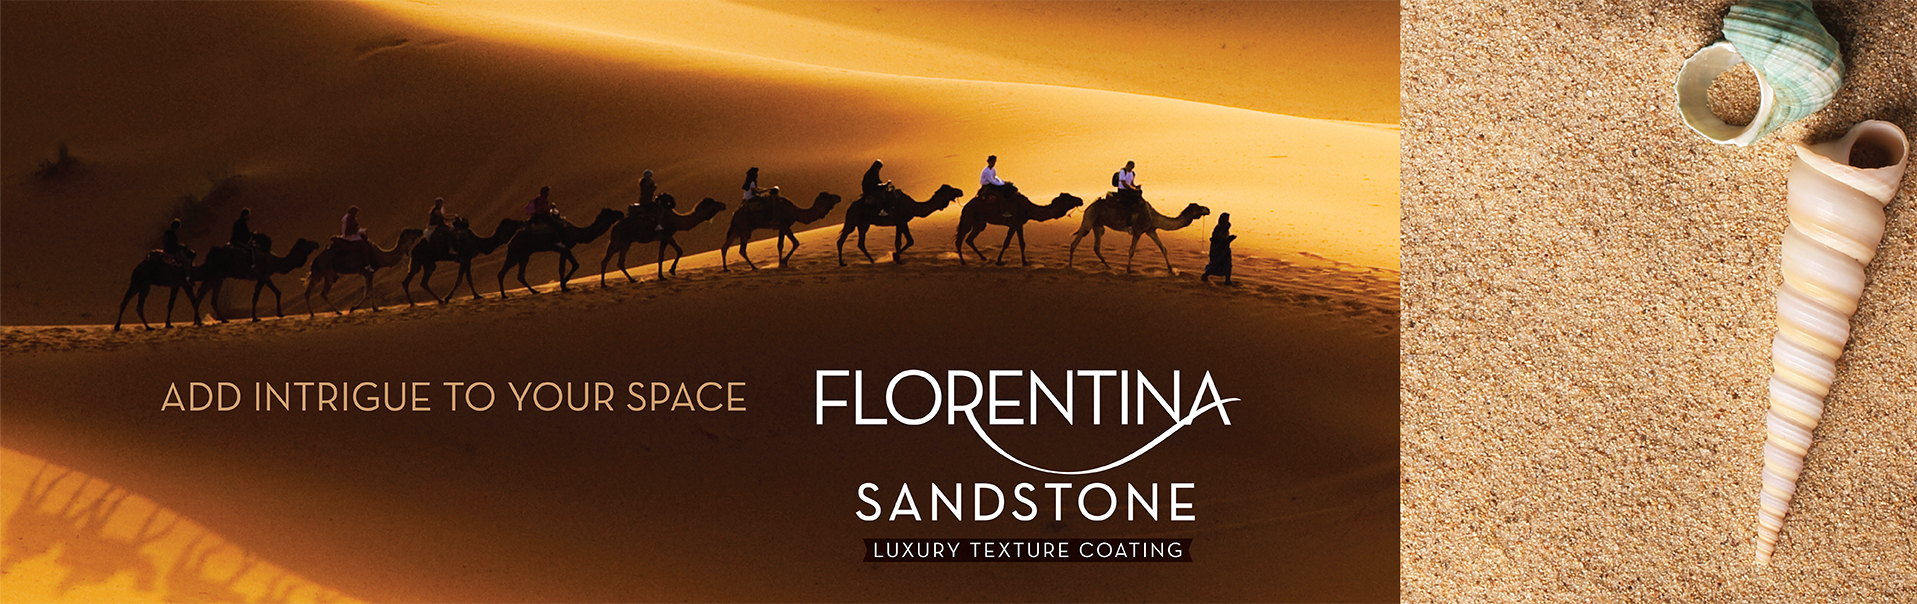 Florentina Sandstone Banner